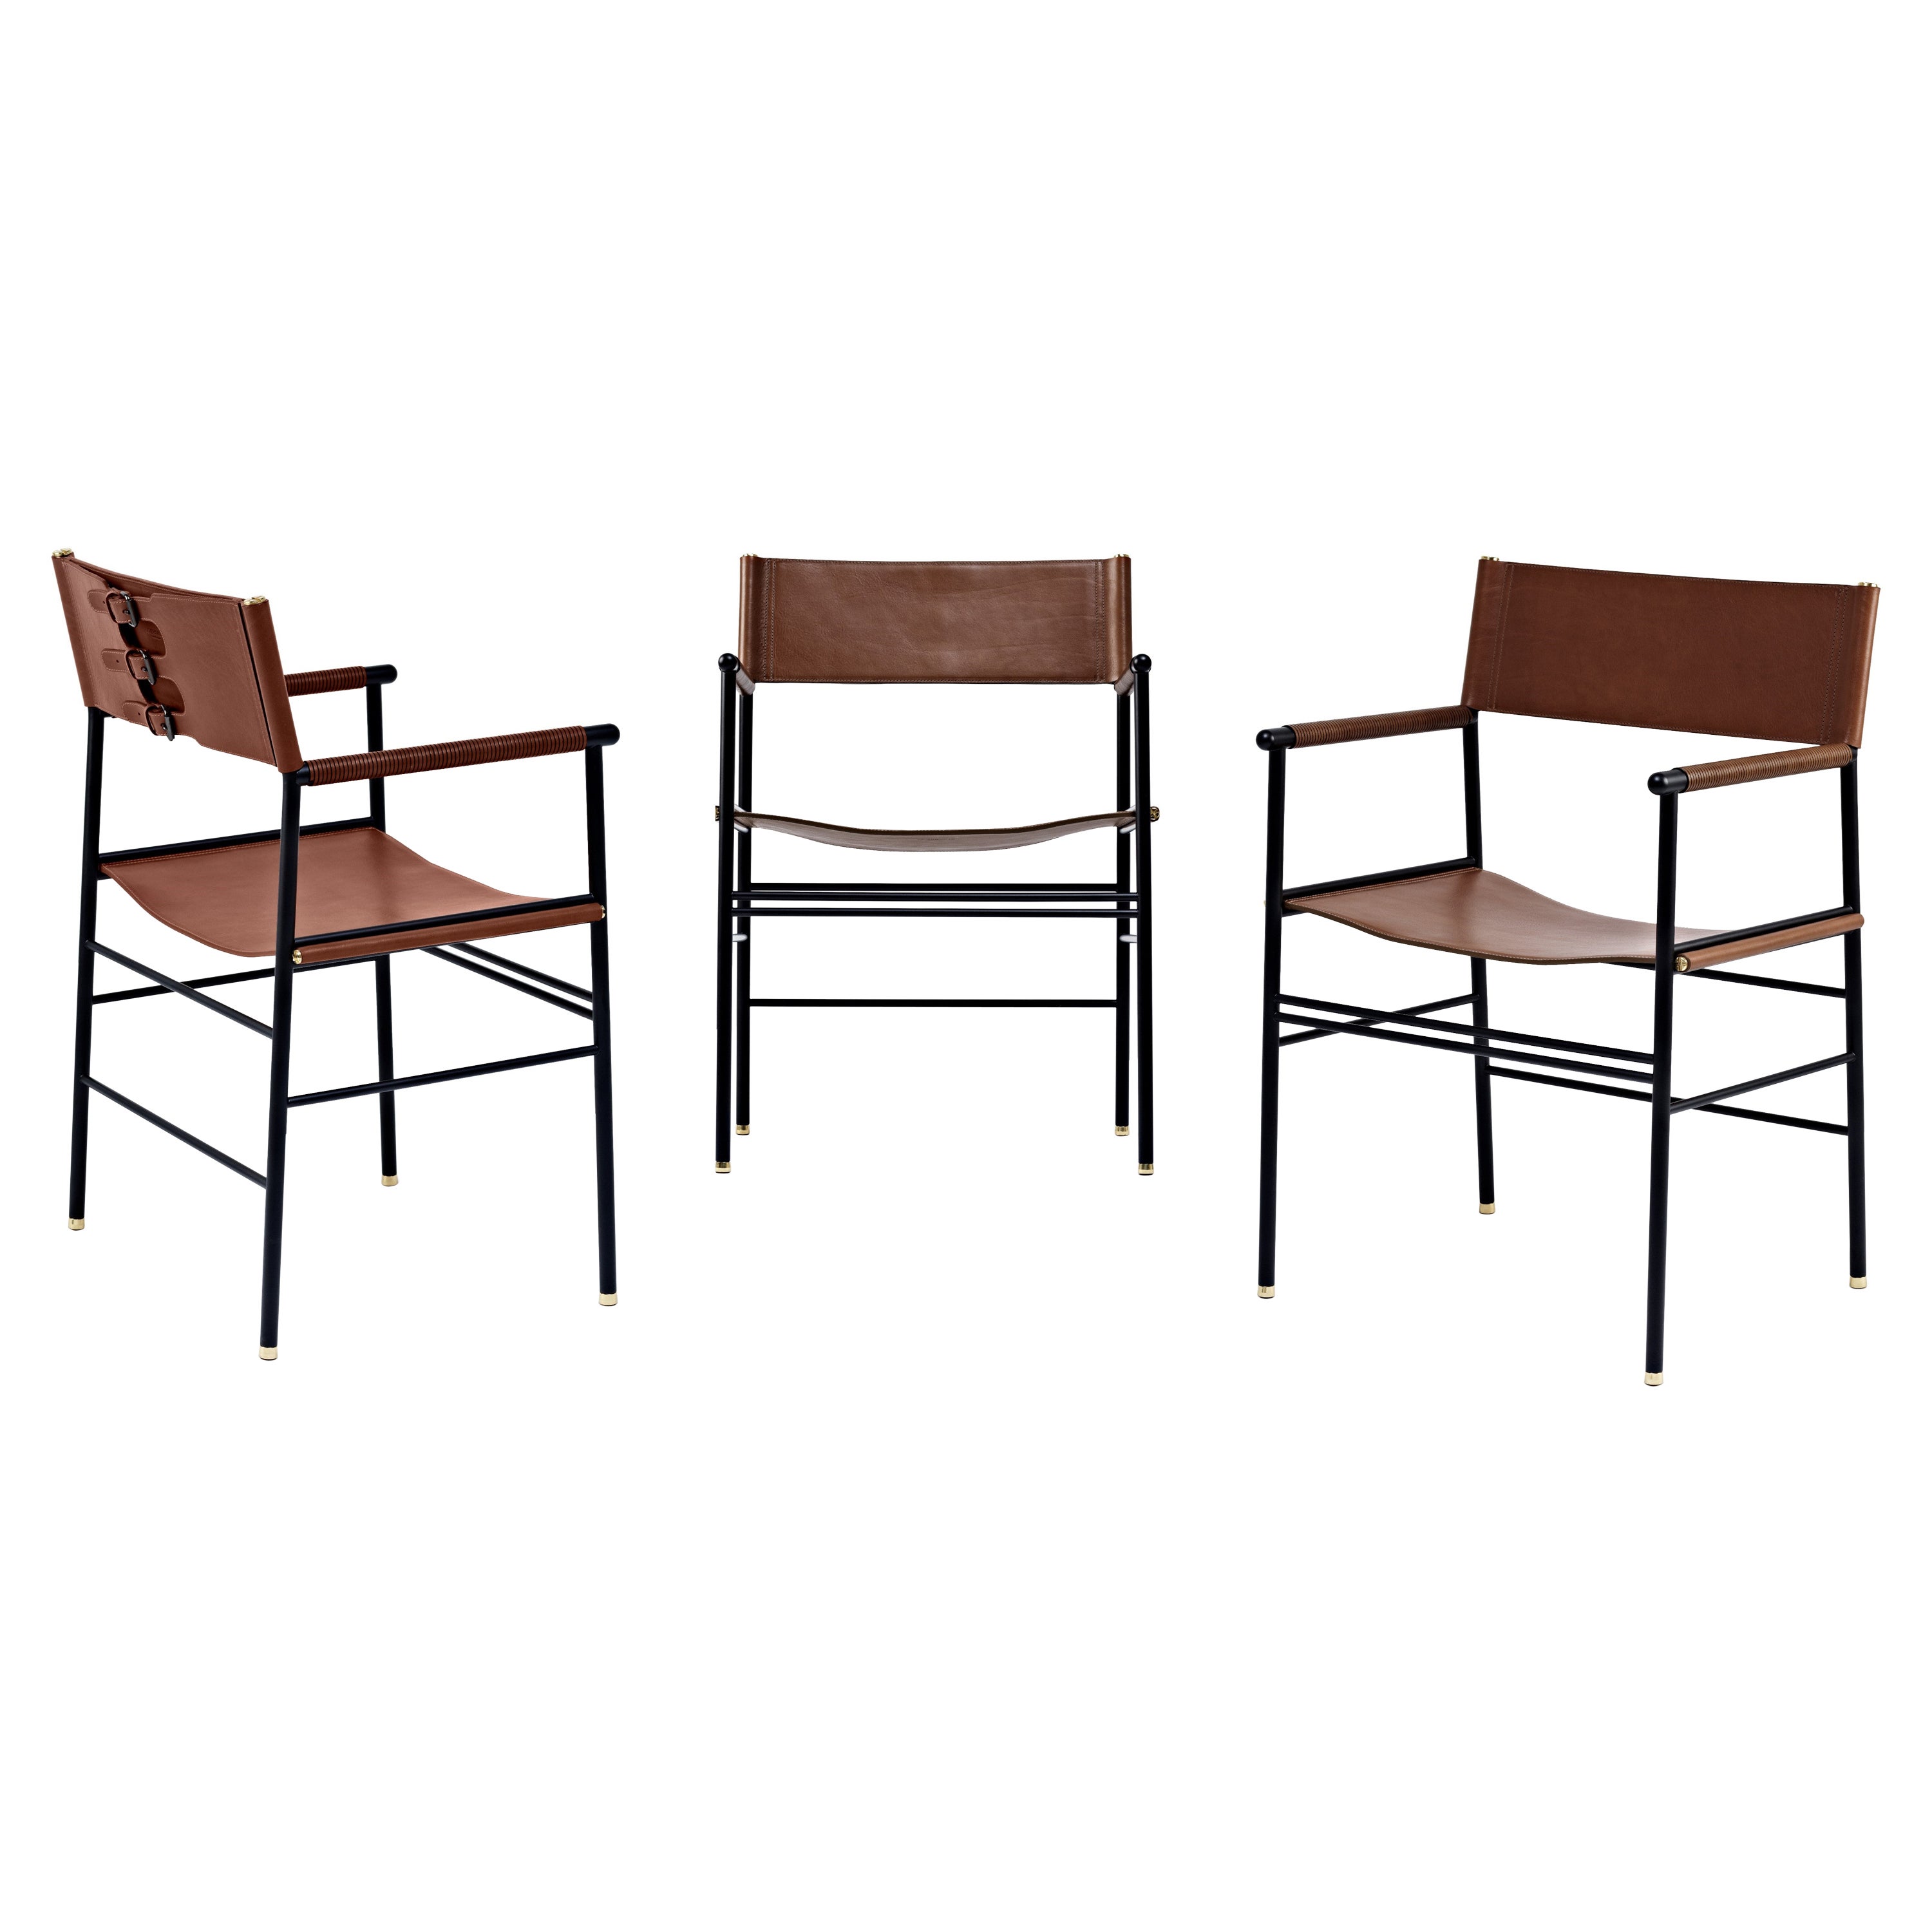 Ensemble de 3 fauteuils contemporains en cuir marron foncé et métal en caoutchouc noir